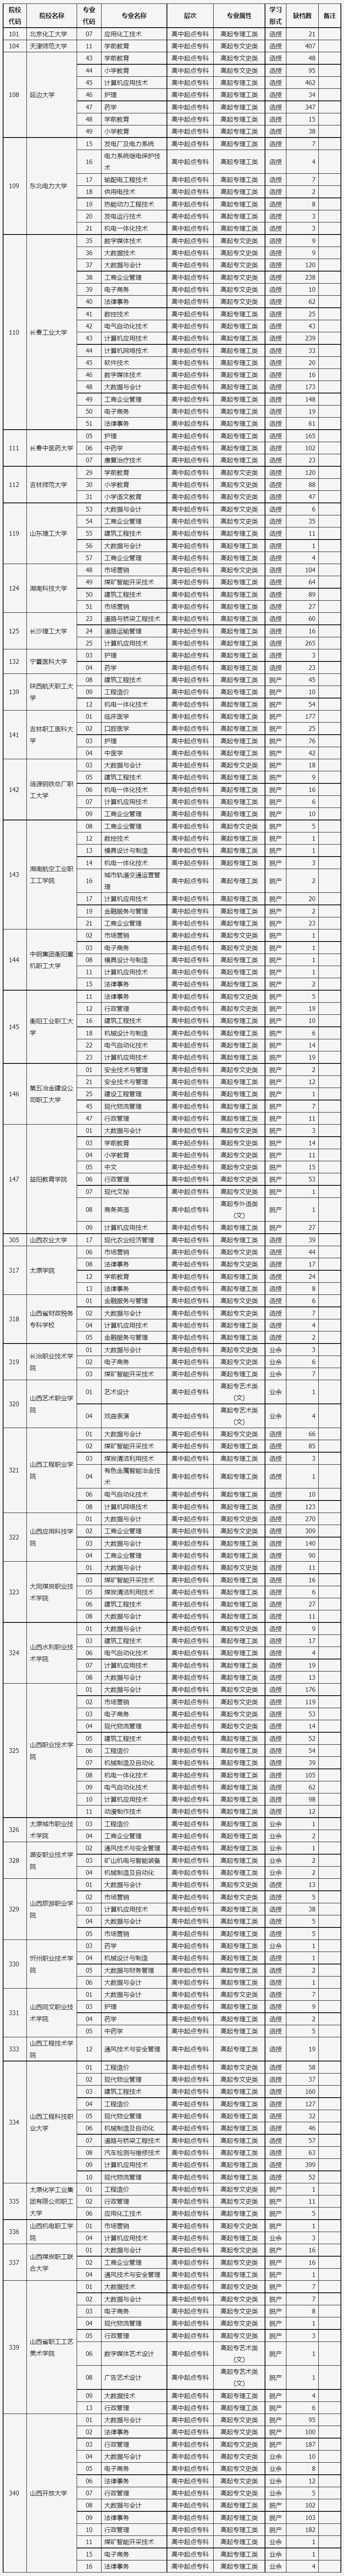 山西省2022年成人高校招生征集志愿公告第9号.png